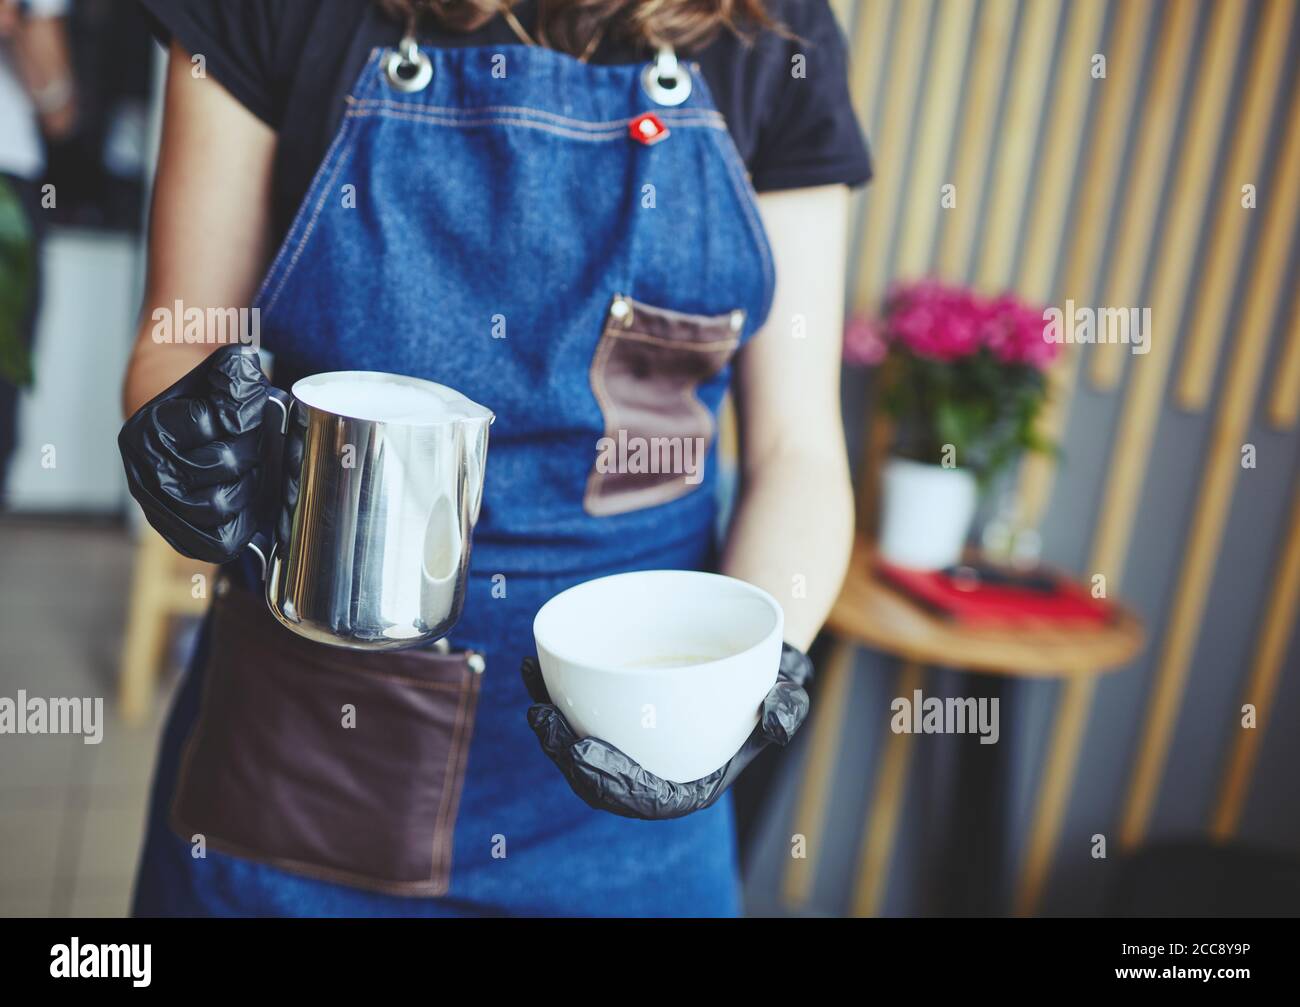 La femme tient un pot à lait et une tasse de café, prépare du cappuccino et verse du lait fouetté dans un espresso Banque D'Images